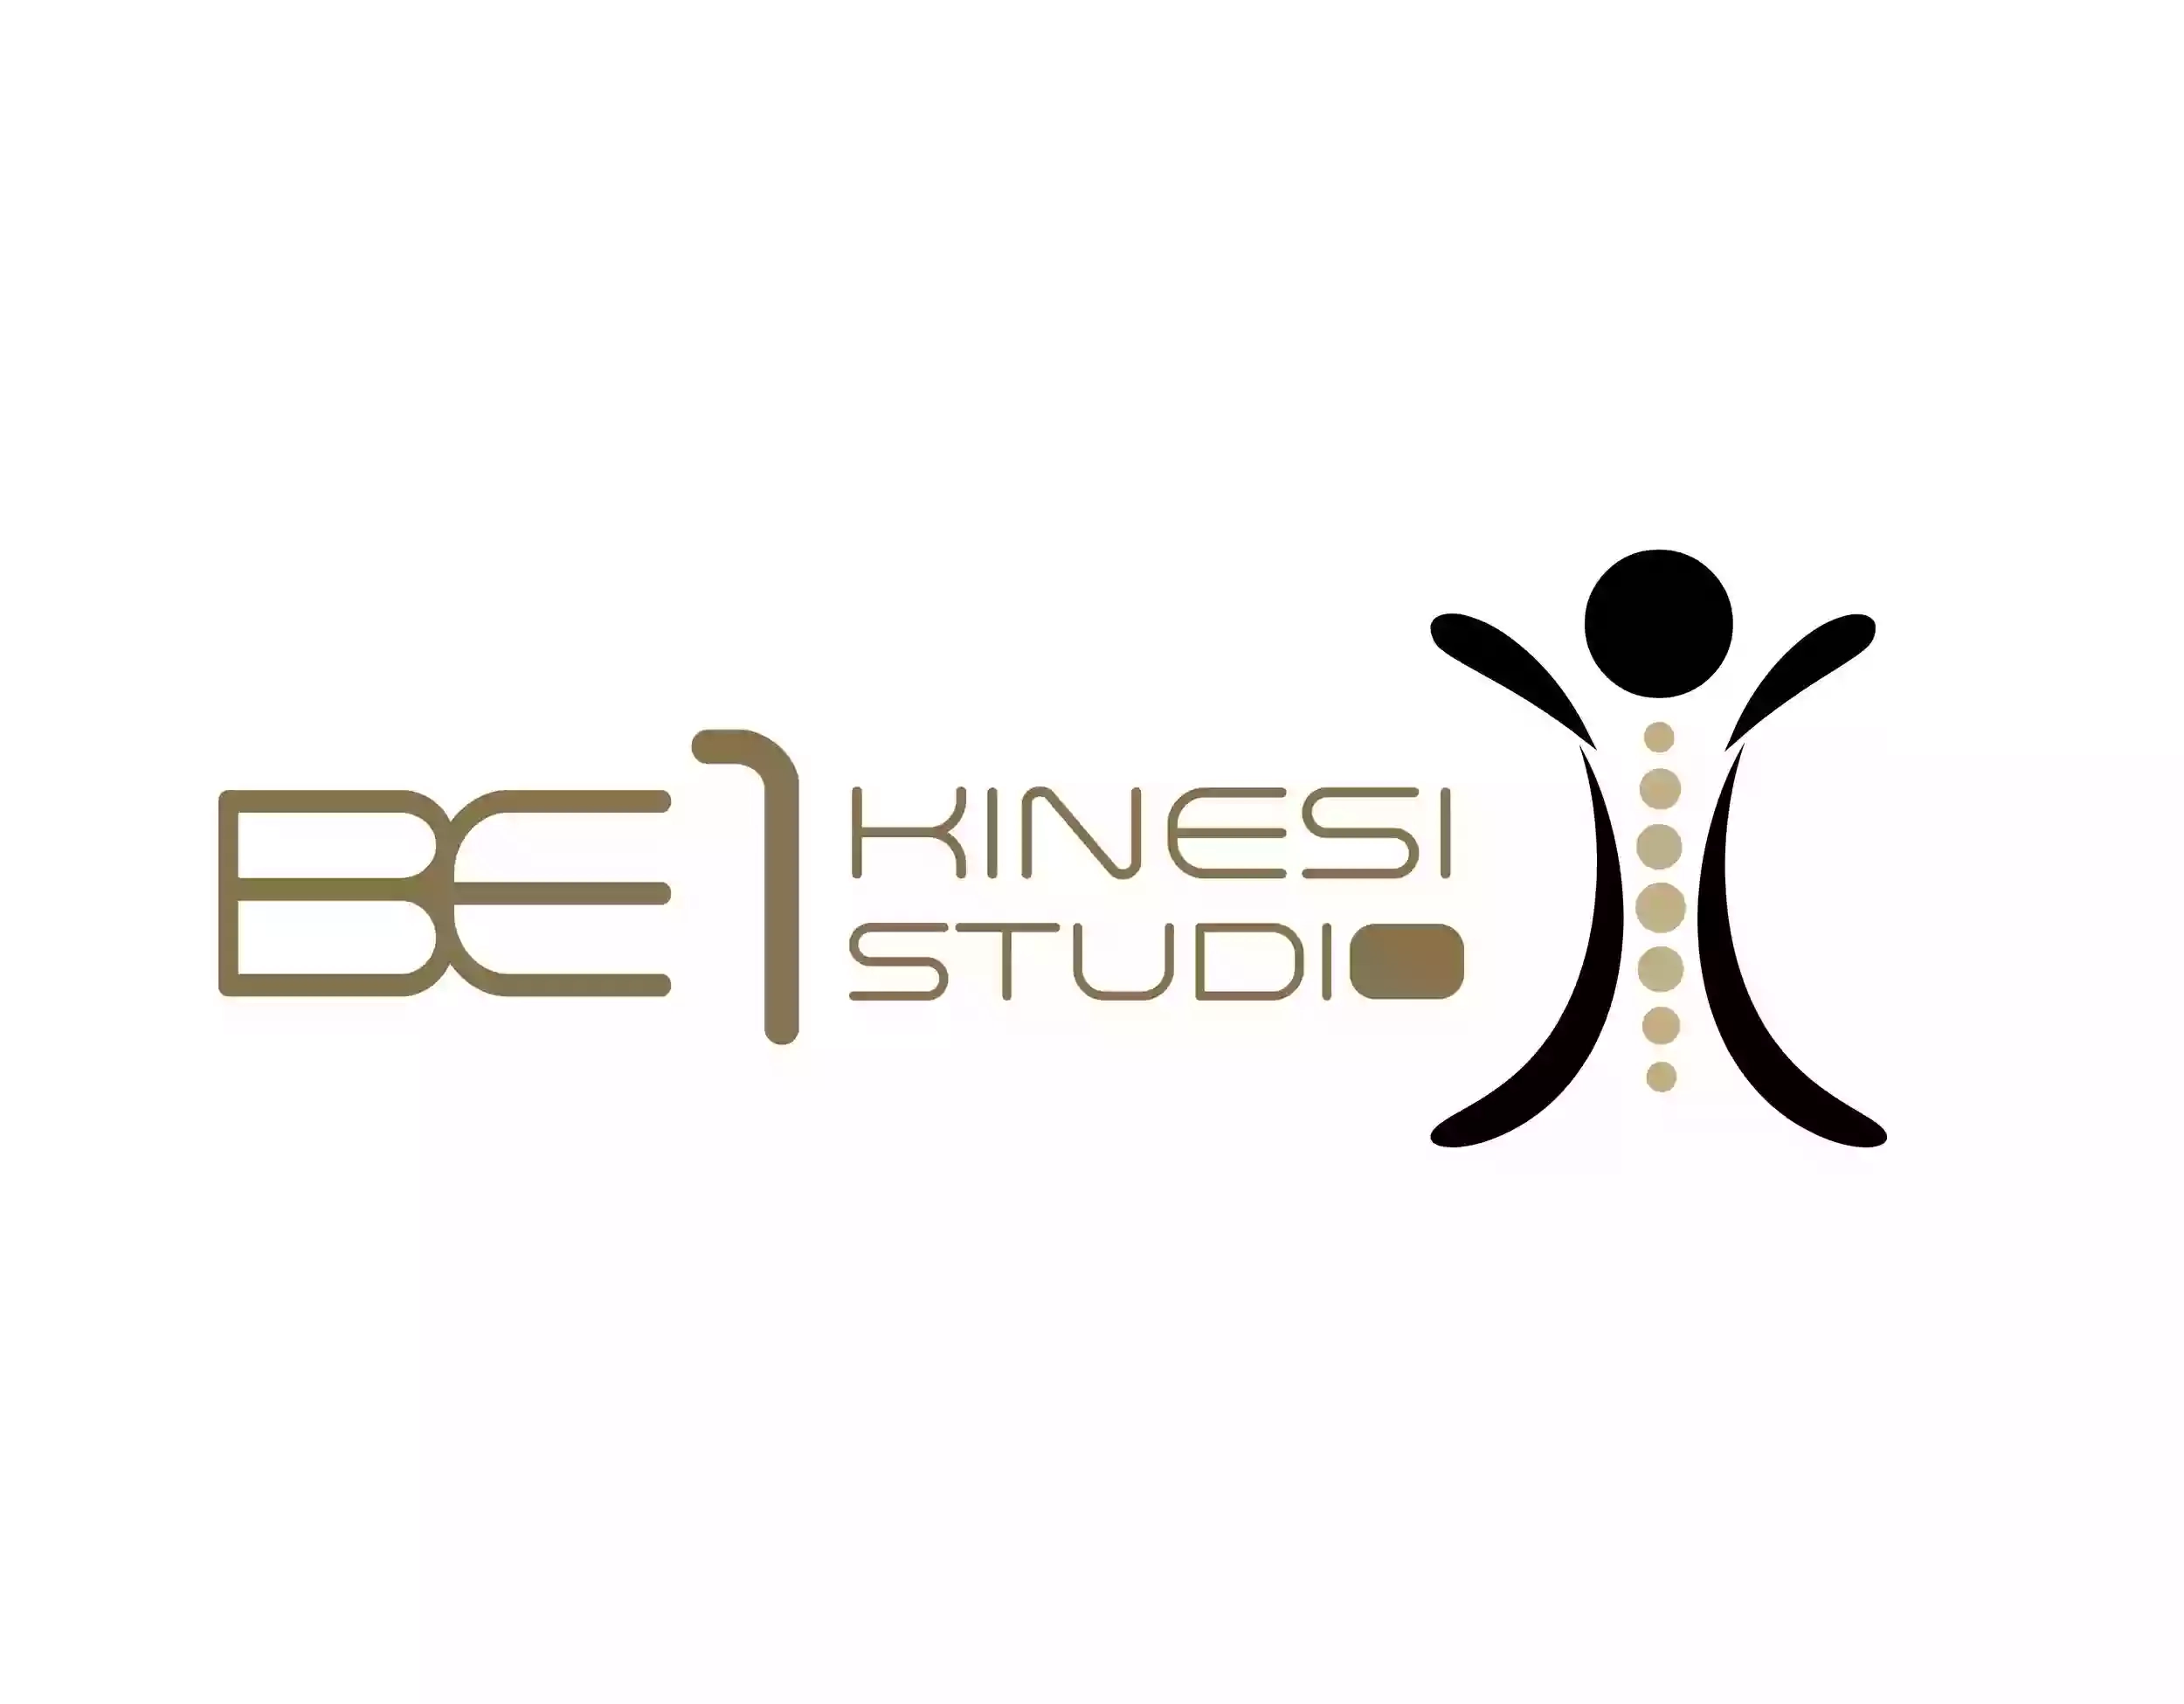 BE1 Kinesi Studio